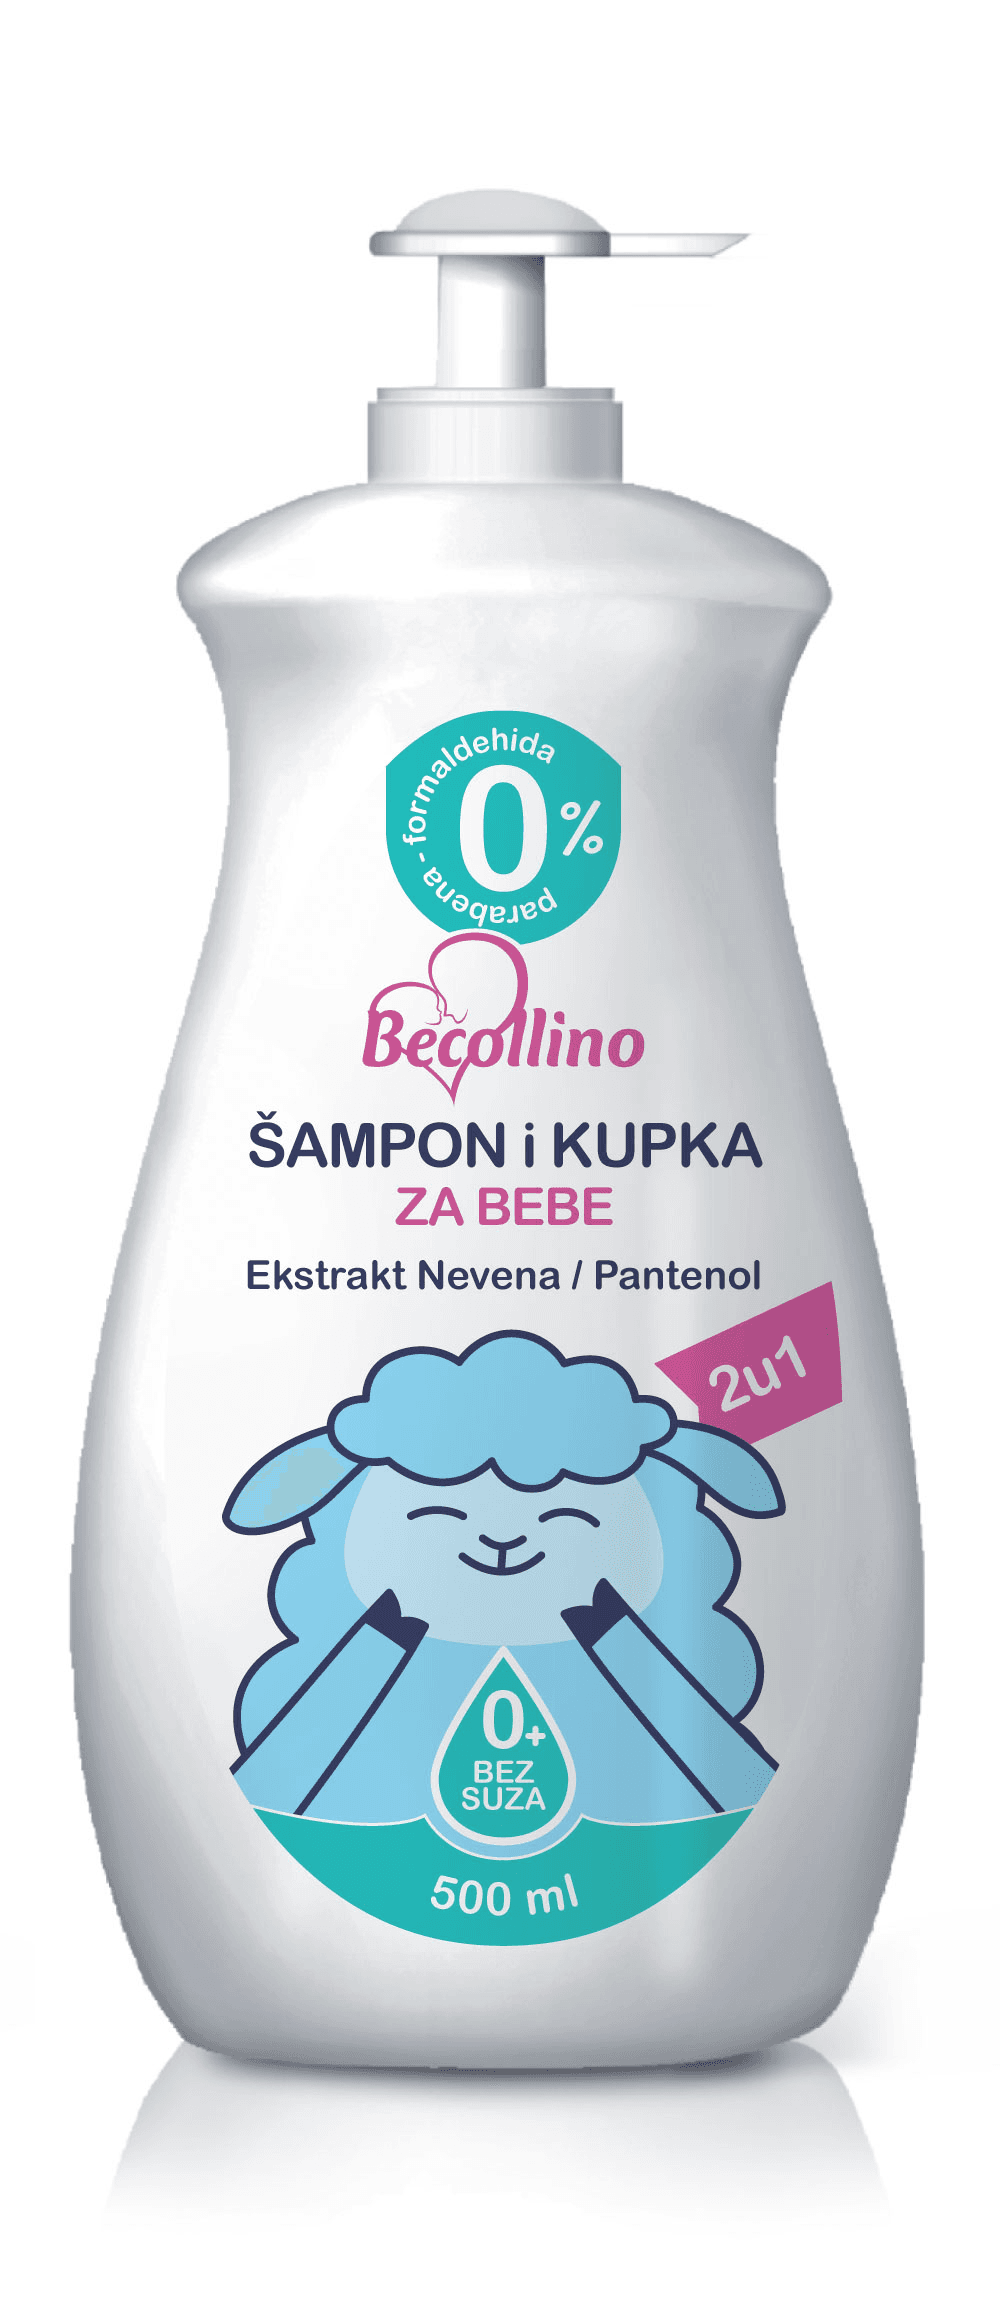 BECOLLINO Šampon kupka za bebe2u1 500ml